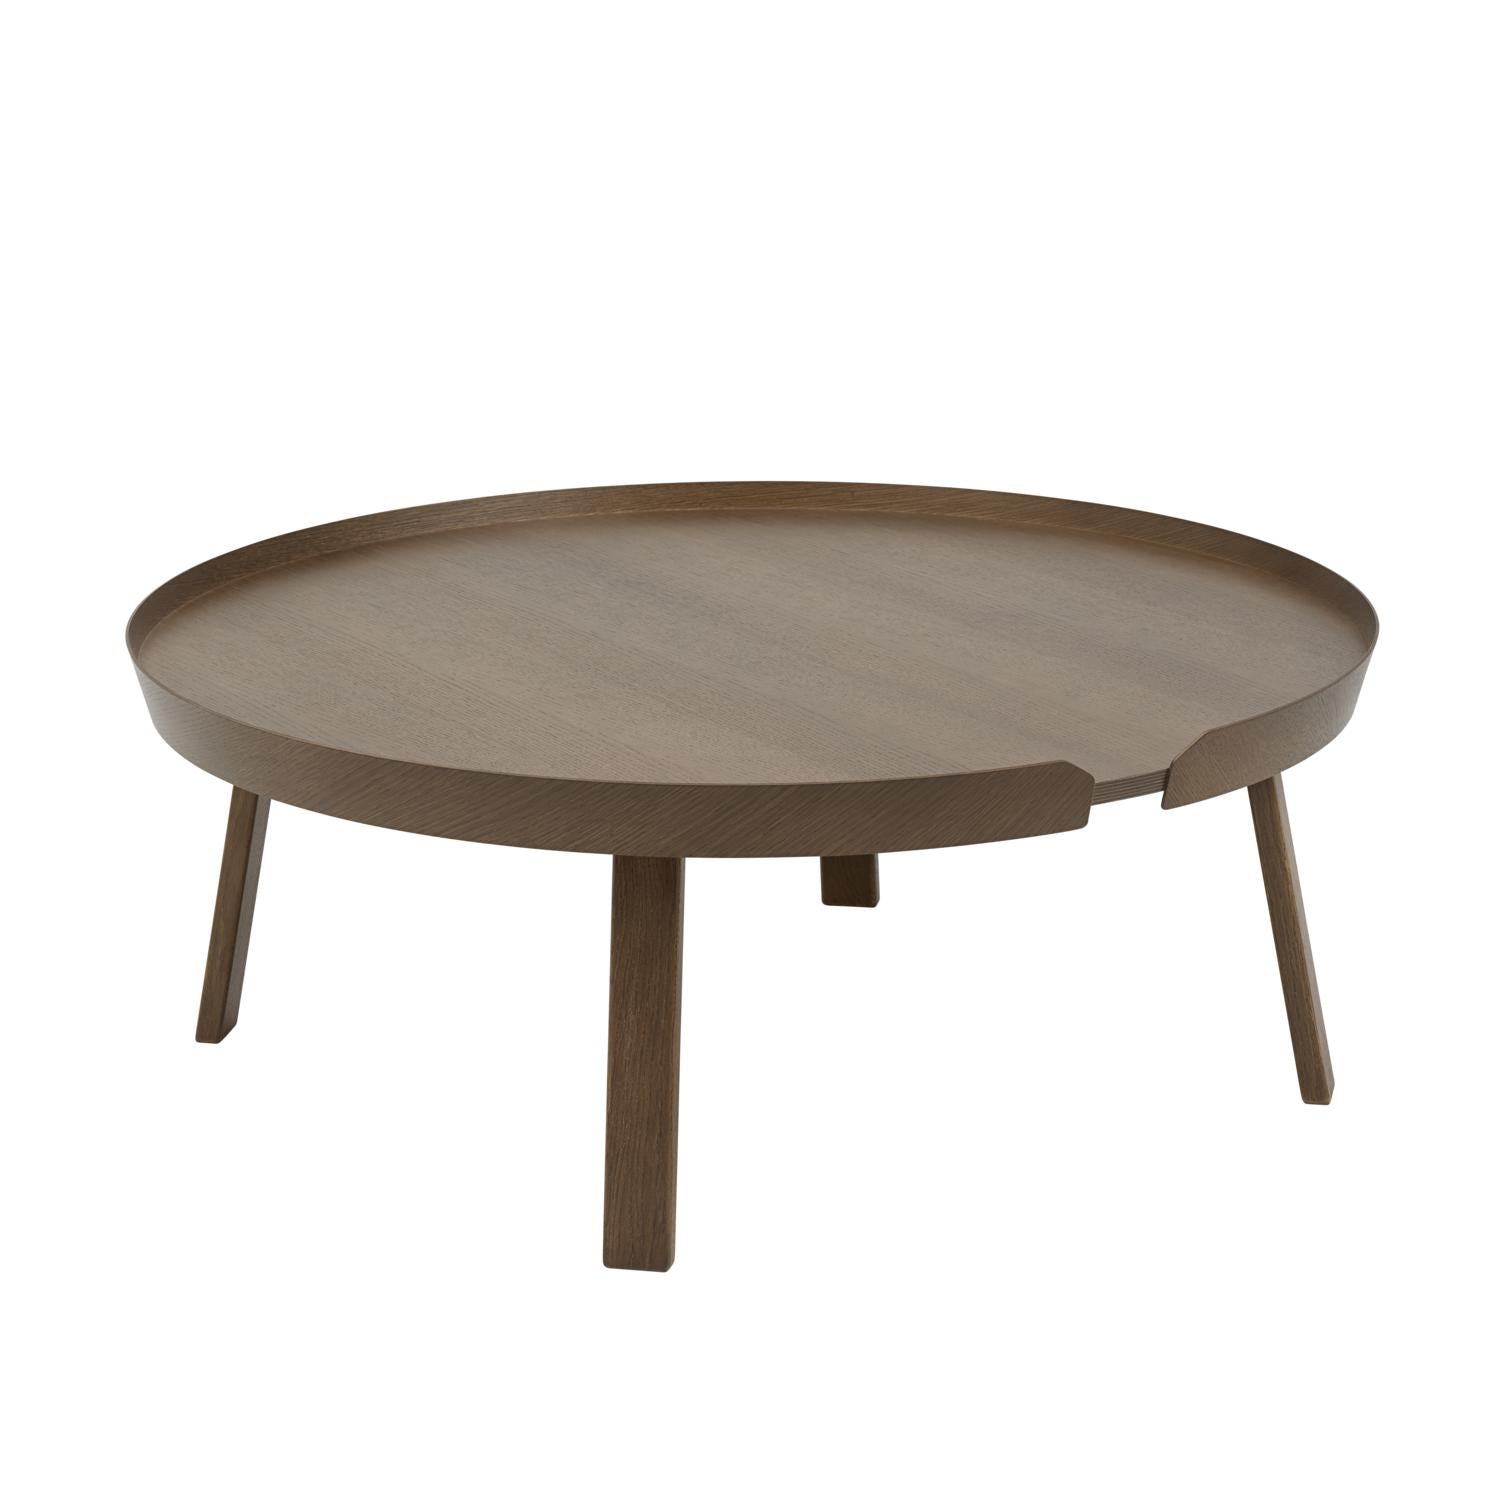 Muuto intorno al tavolino Ø 95 cm, macchiata di marrone scuro